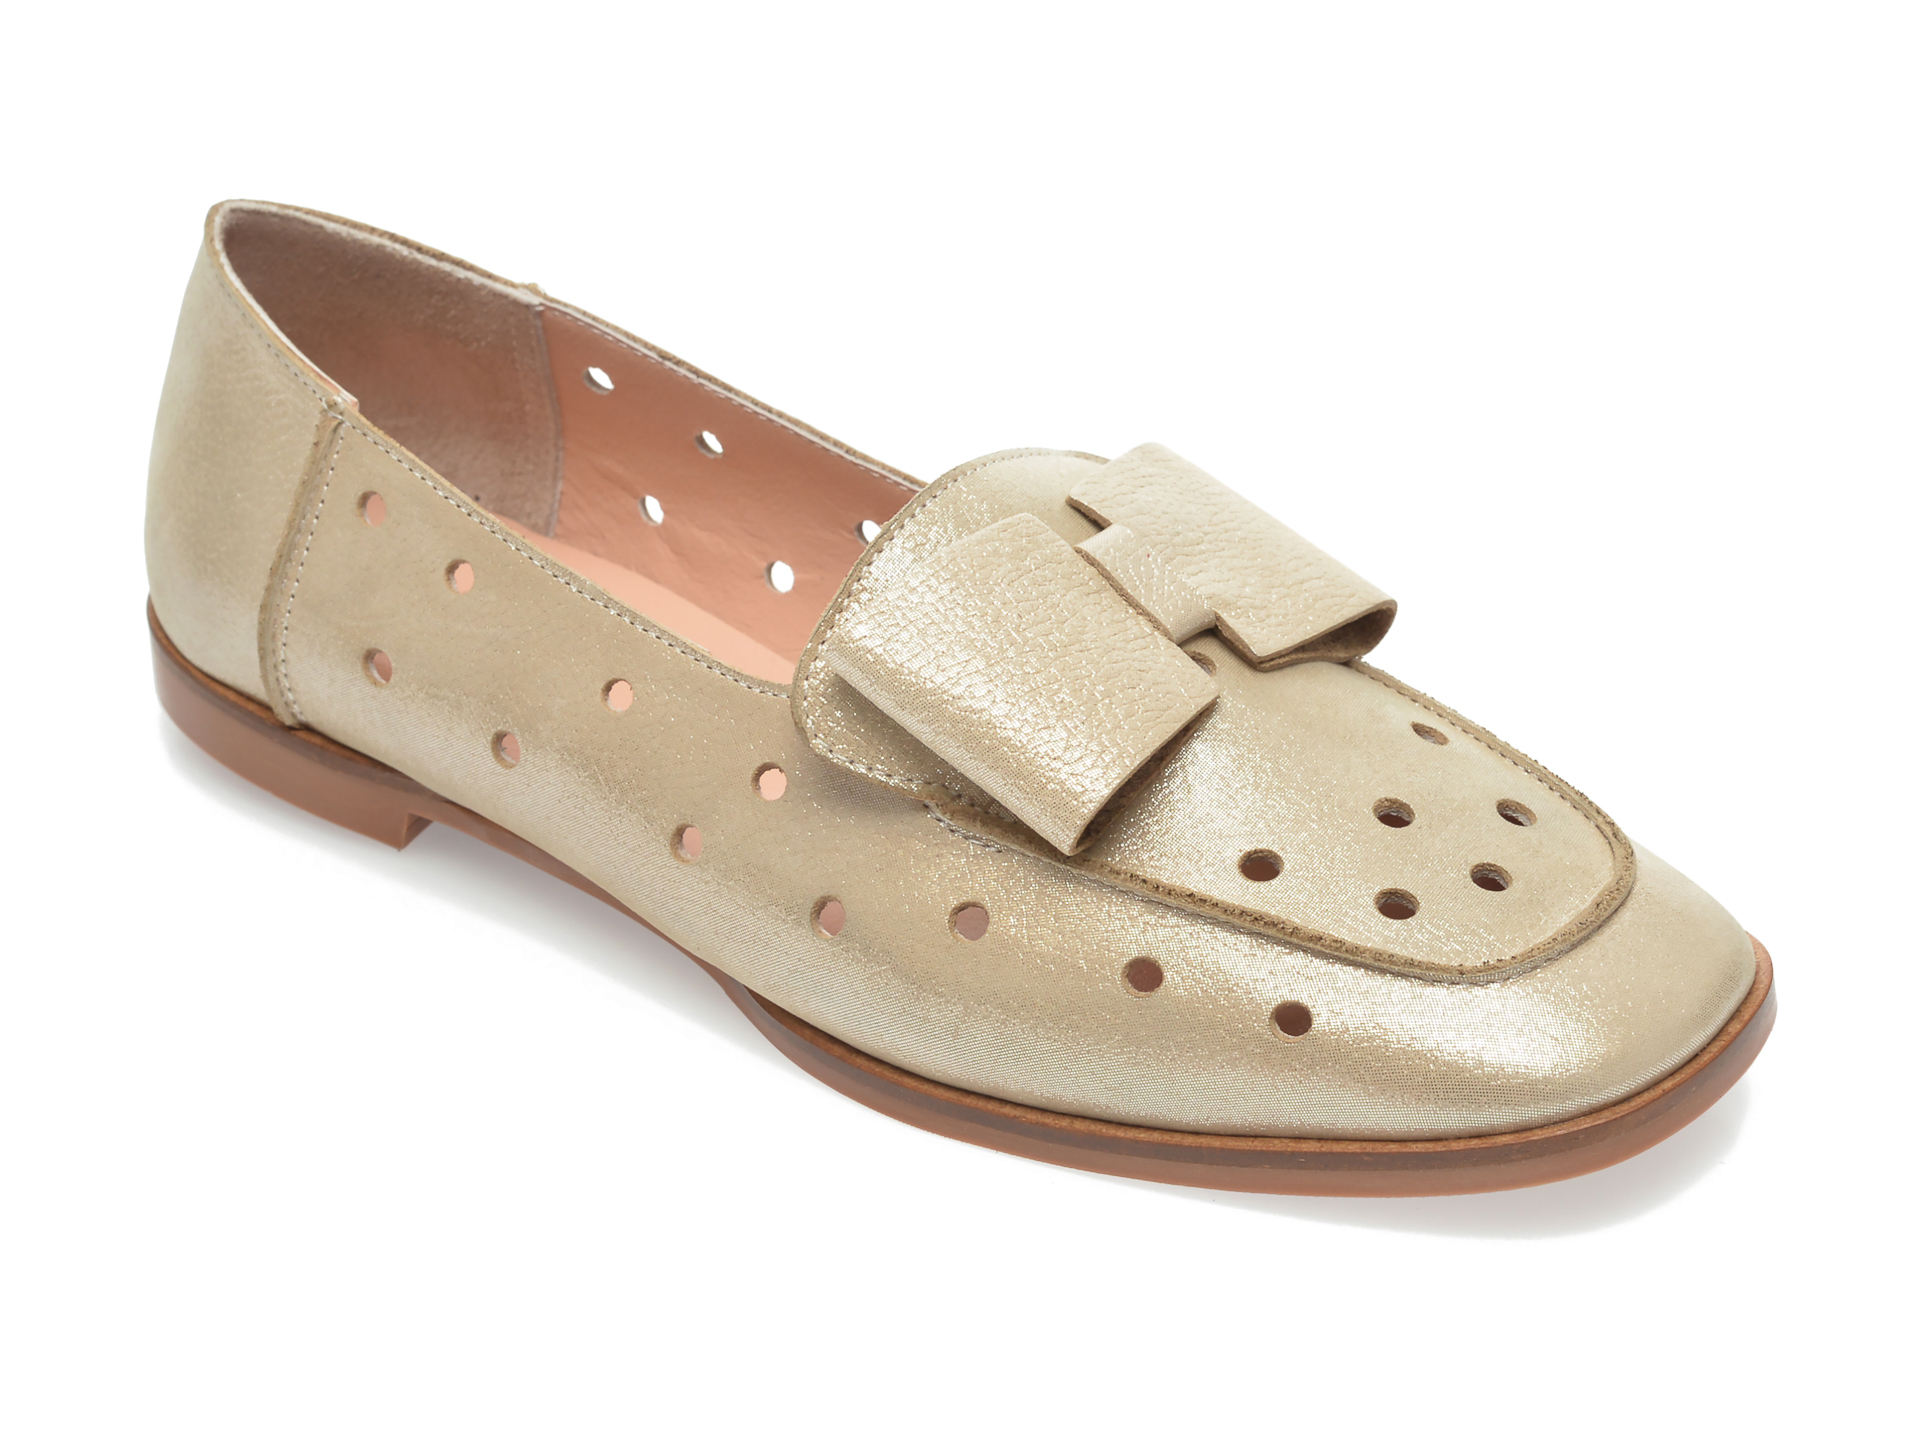 Pantofi FLAVIA PASSINI aurii, 602, din piele naturala